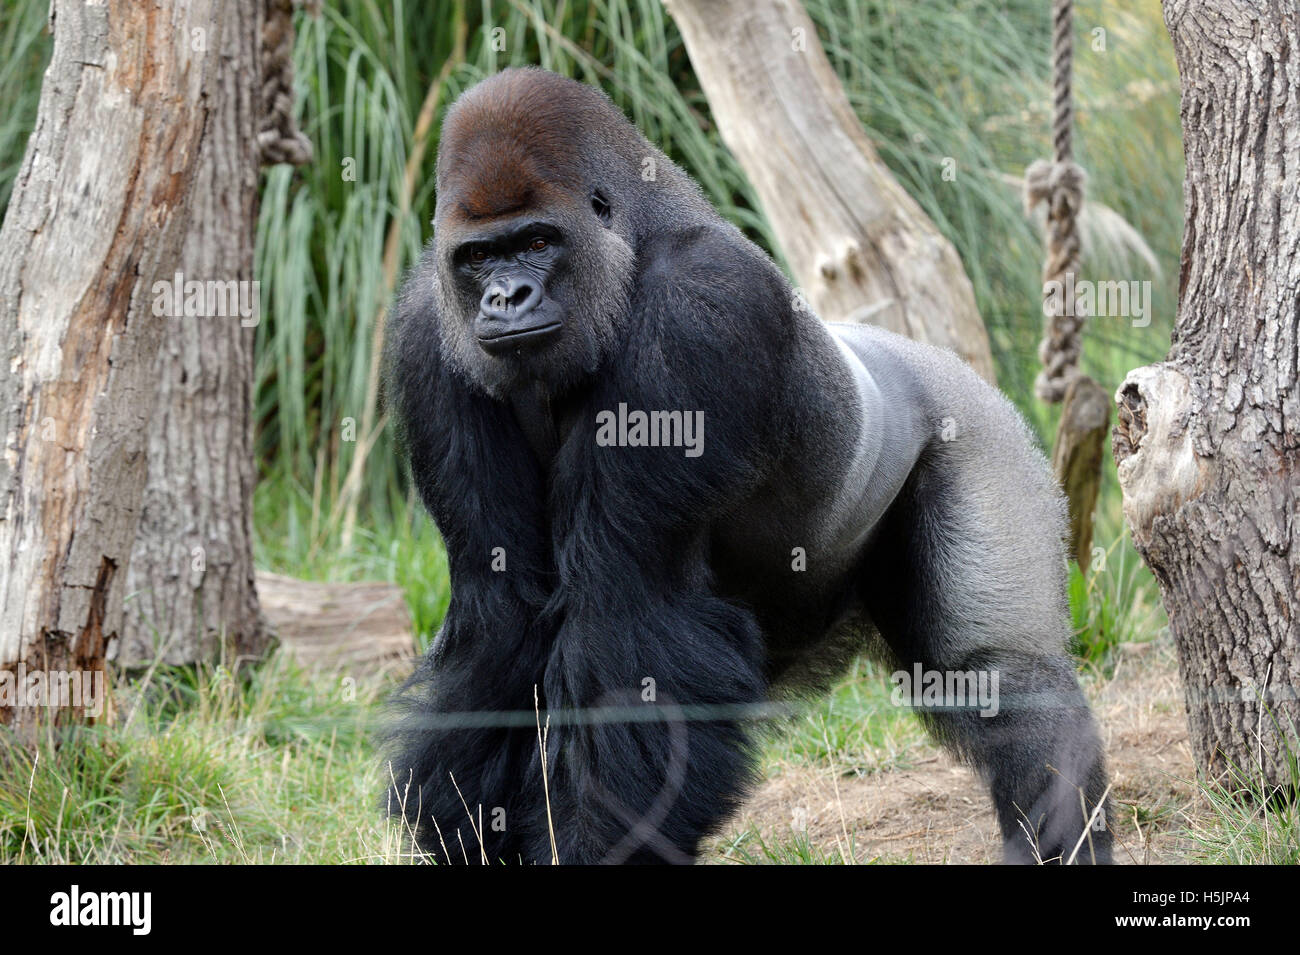 Silverback gorilla, Kumbuka, dans son enclos au ZSL Zoo de Londres à la suite de son 'des opportunistes s'échapper par deux portes déverrouillées dans un couloir où un gardien travaillait le 13 octobre. Banque D'Images